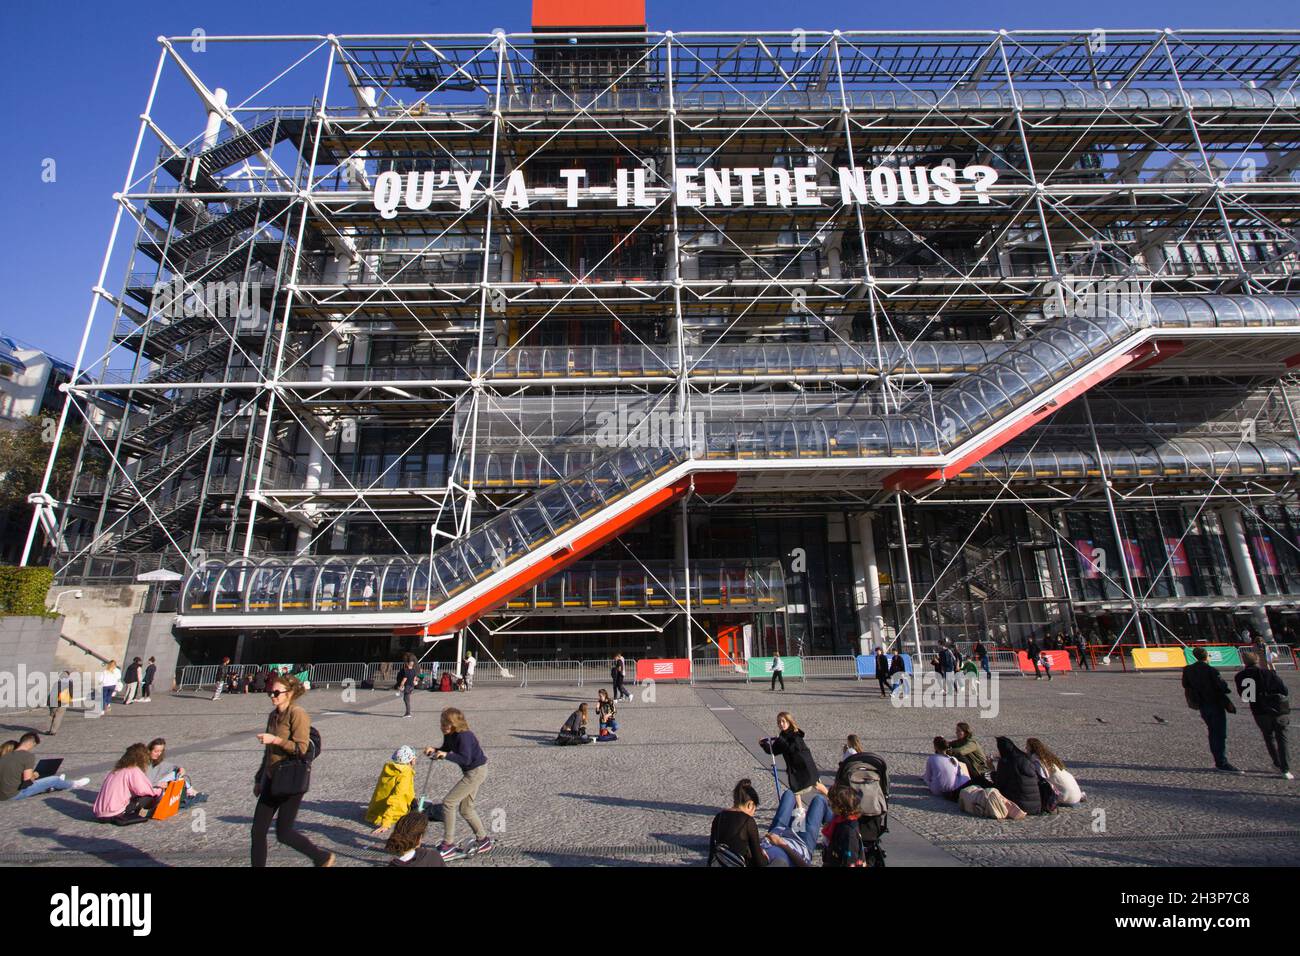 France, Paris, Centre Georges-Pompidou, arts center, museum, Stock Photo